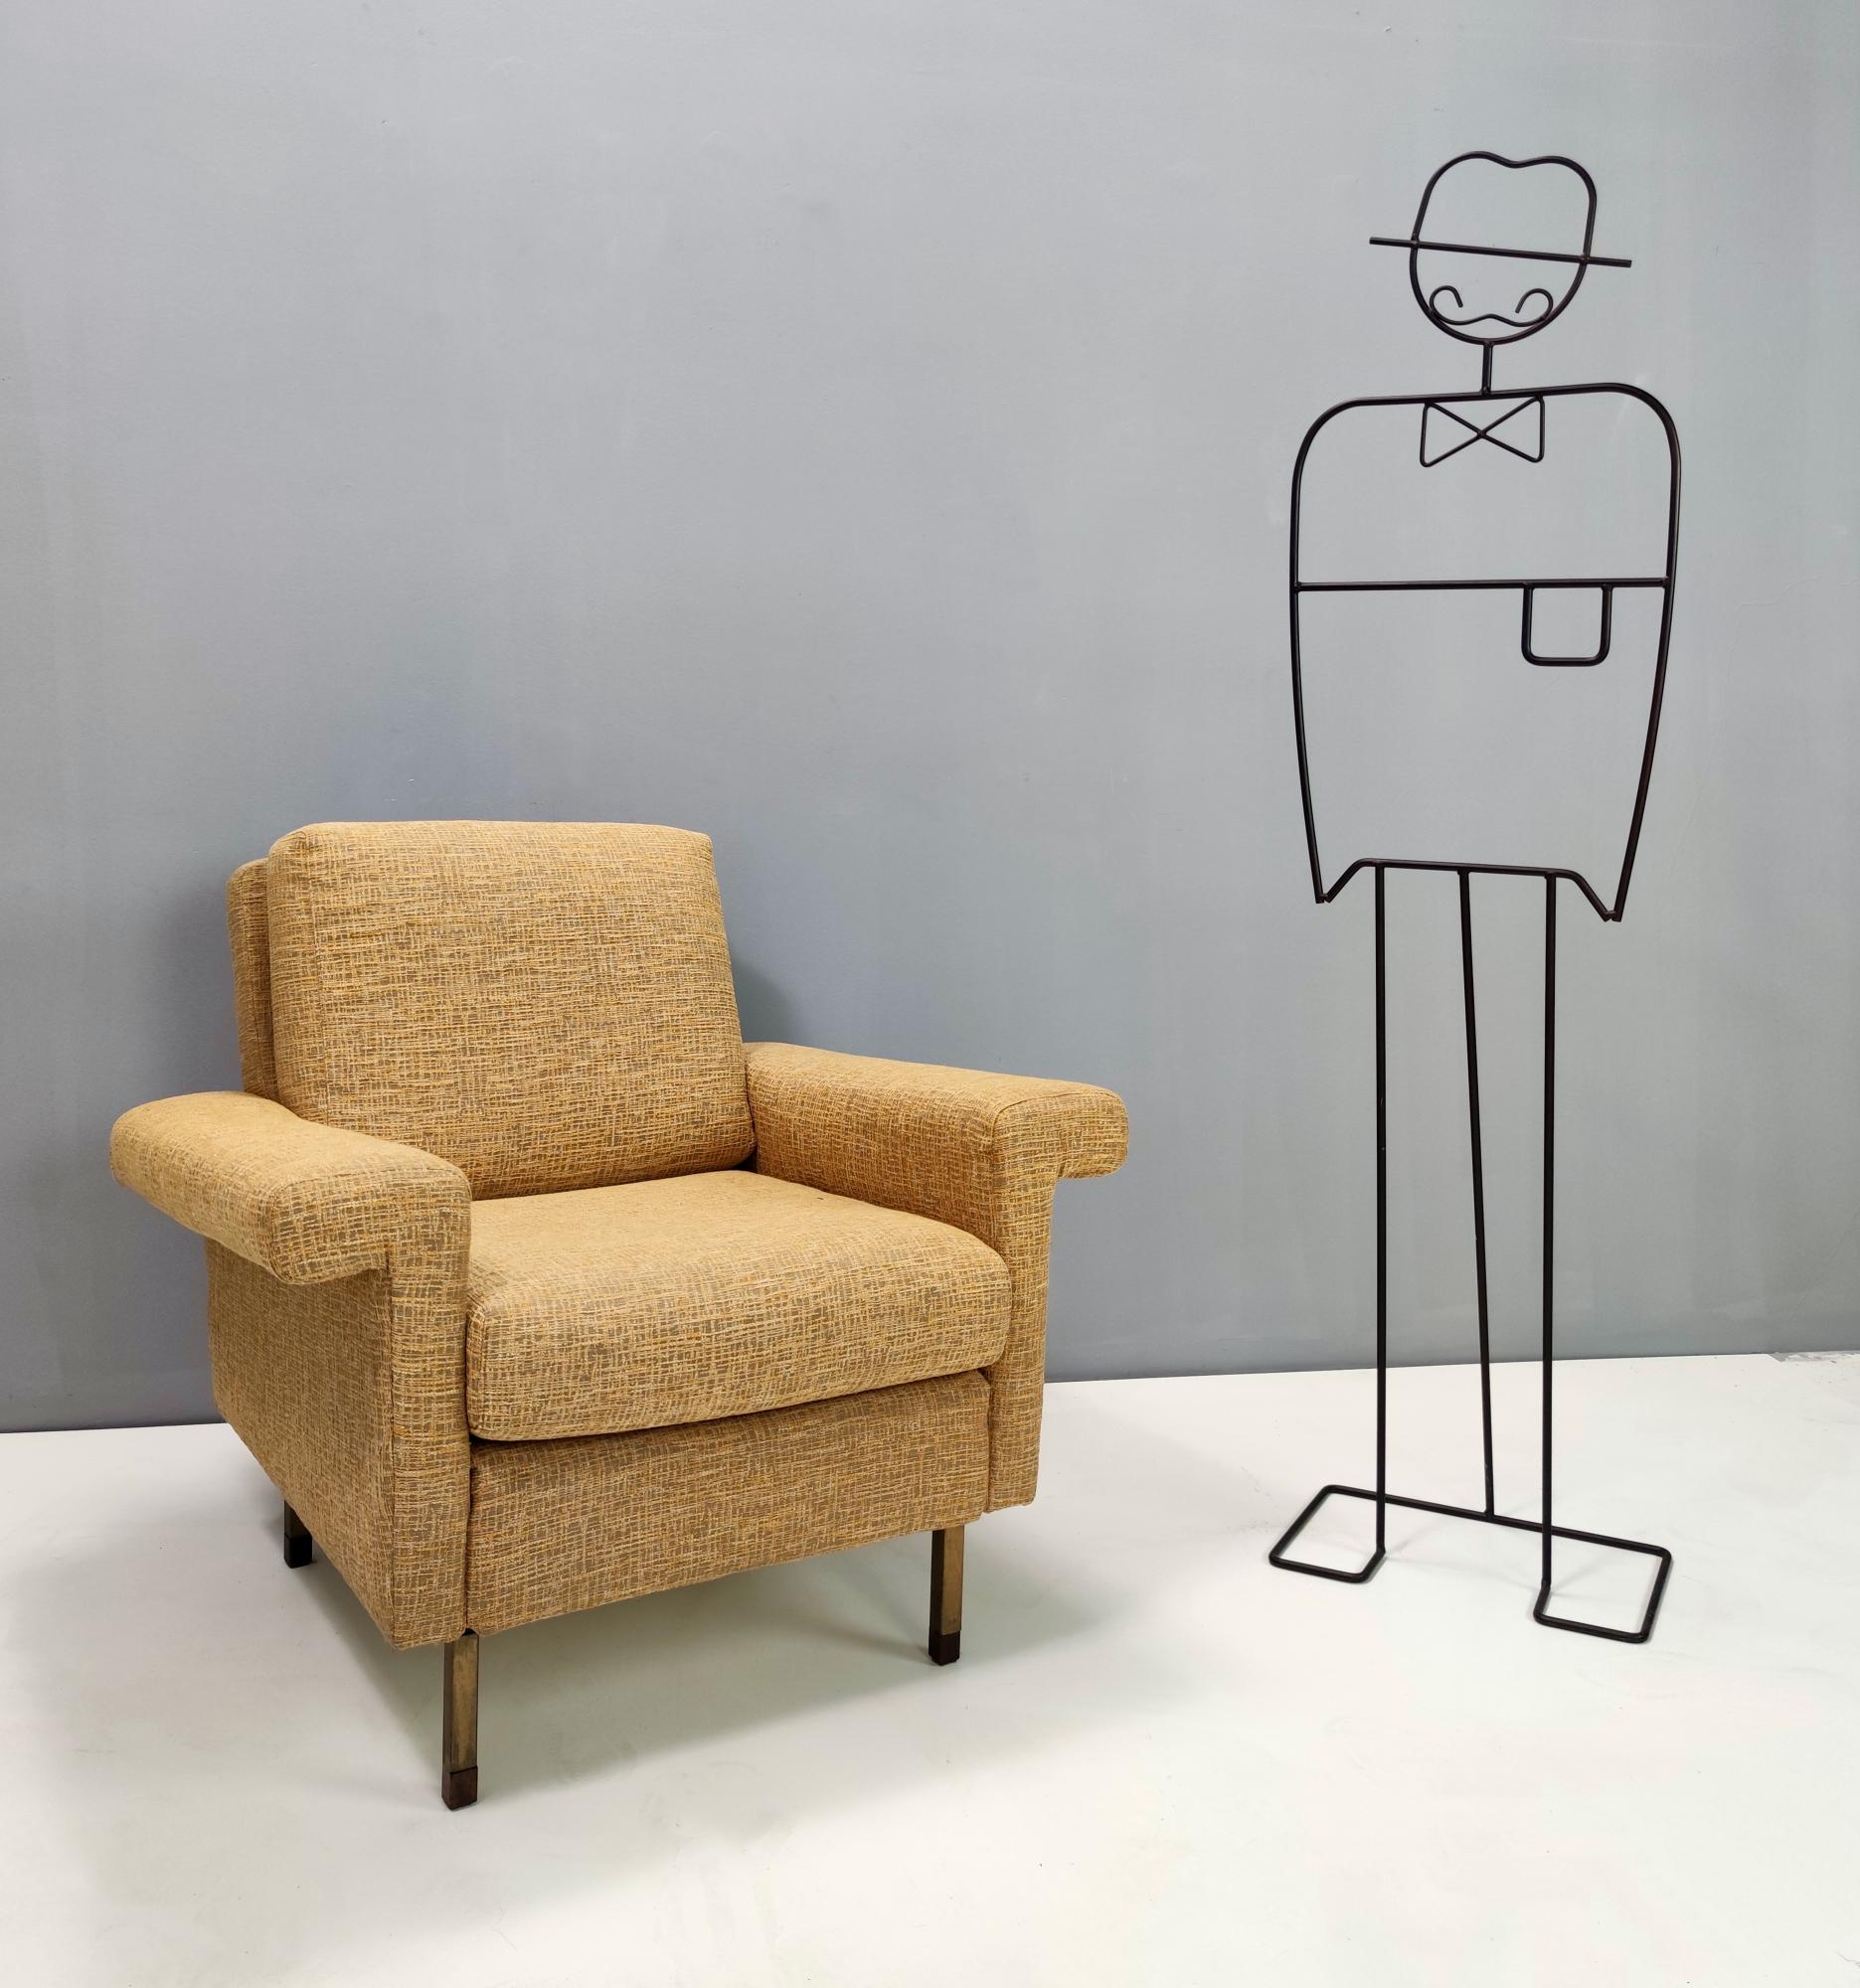 Hergestellt in Italien, 1960er Jahre.
Dieser Sessel wurde kürzlich mit einem hochwertigen goldroten Stoff bezogen und hat Füße aus Holz und lackiertem Eisen.
Es könnte leichte Gebrauchsspuren aufweisen, da es Vintage ist, aber es kann als in sehr